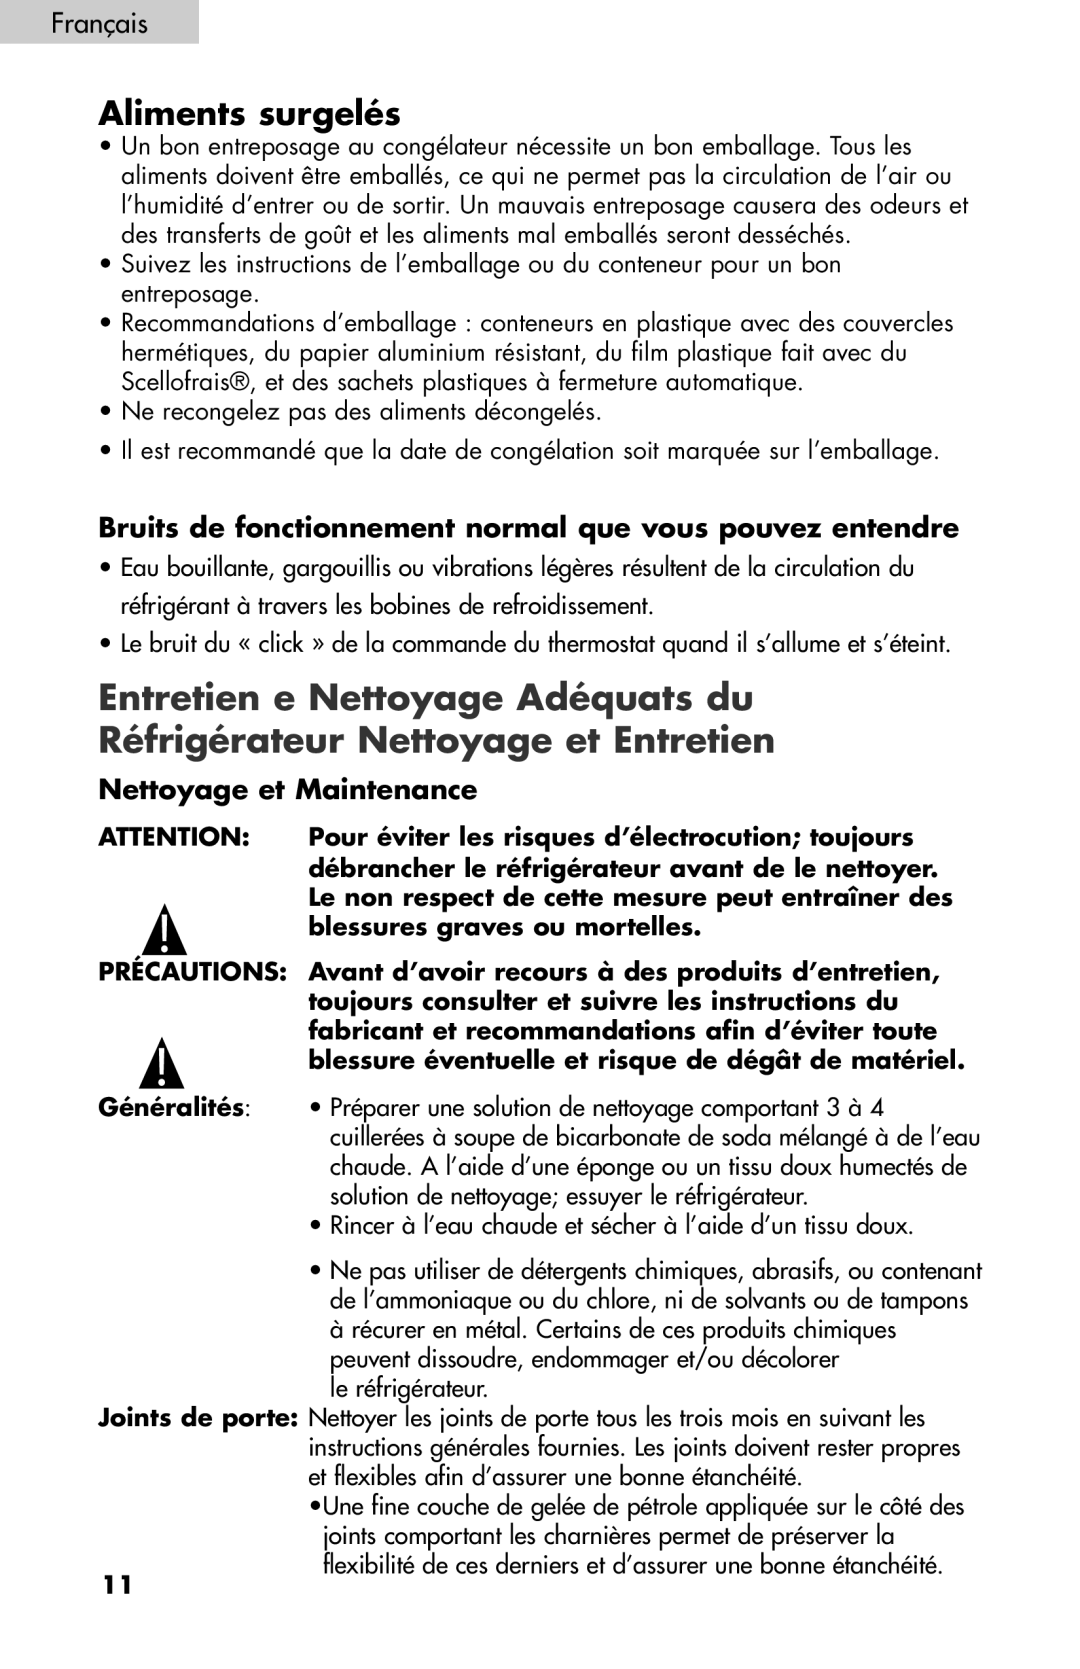 Igloo FR834B, FR832 user manual Entretien e Nettoyage Adéquats du, Réfrigérateur Nettoyage et Entretien, Aliments surgelés 